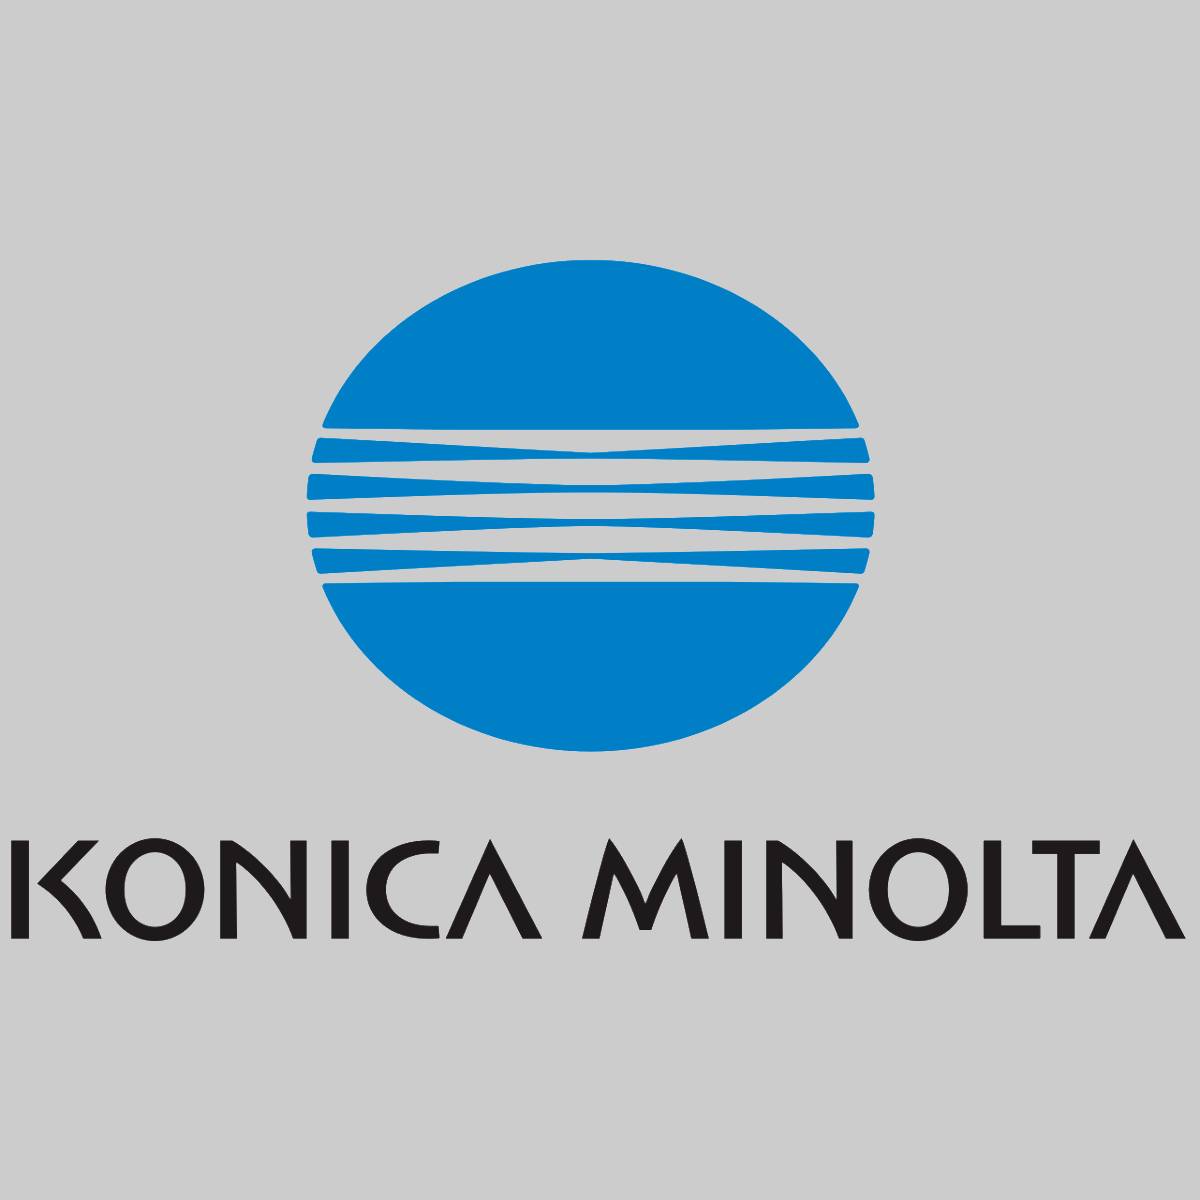 "Original Konica Minolta Waste Container ATB-C552 for Bizhub C452 C552 C652 NEW